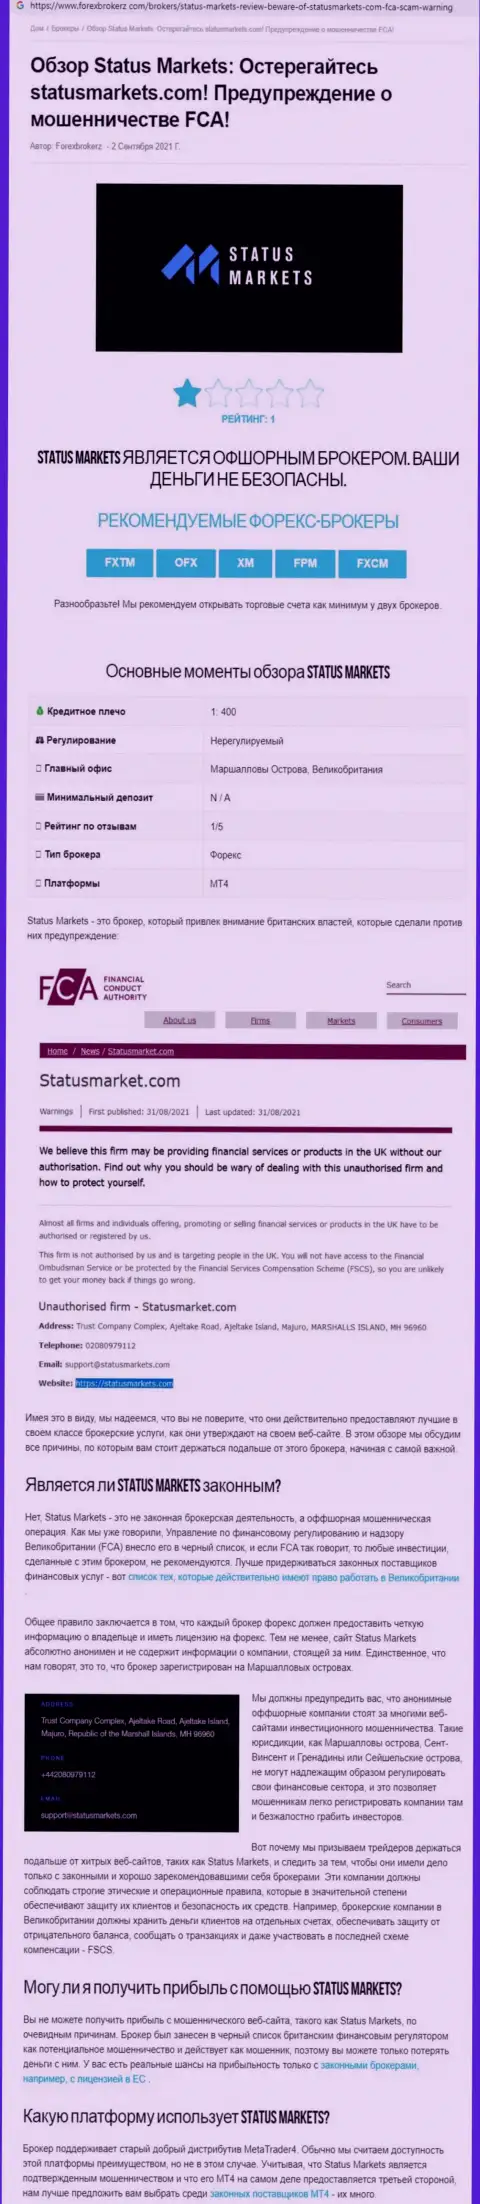 В конторе StatusMarkets мошенничают - факты противозаконных манипуляций (обзор афер компании)